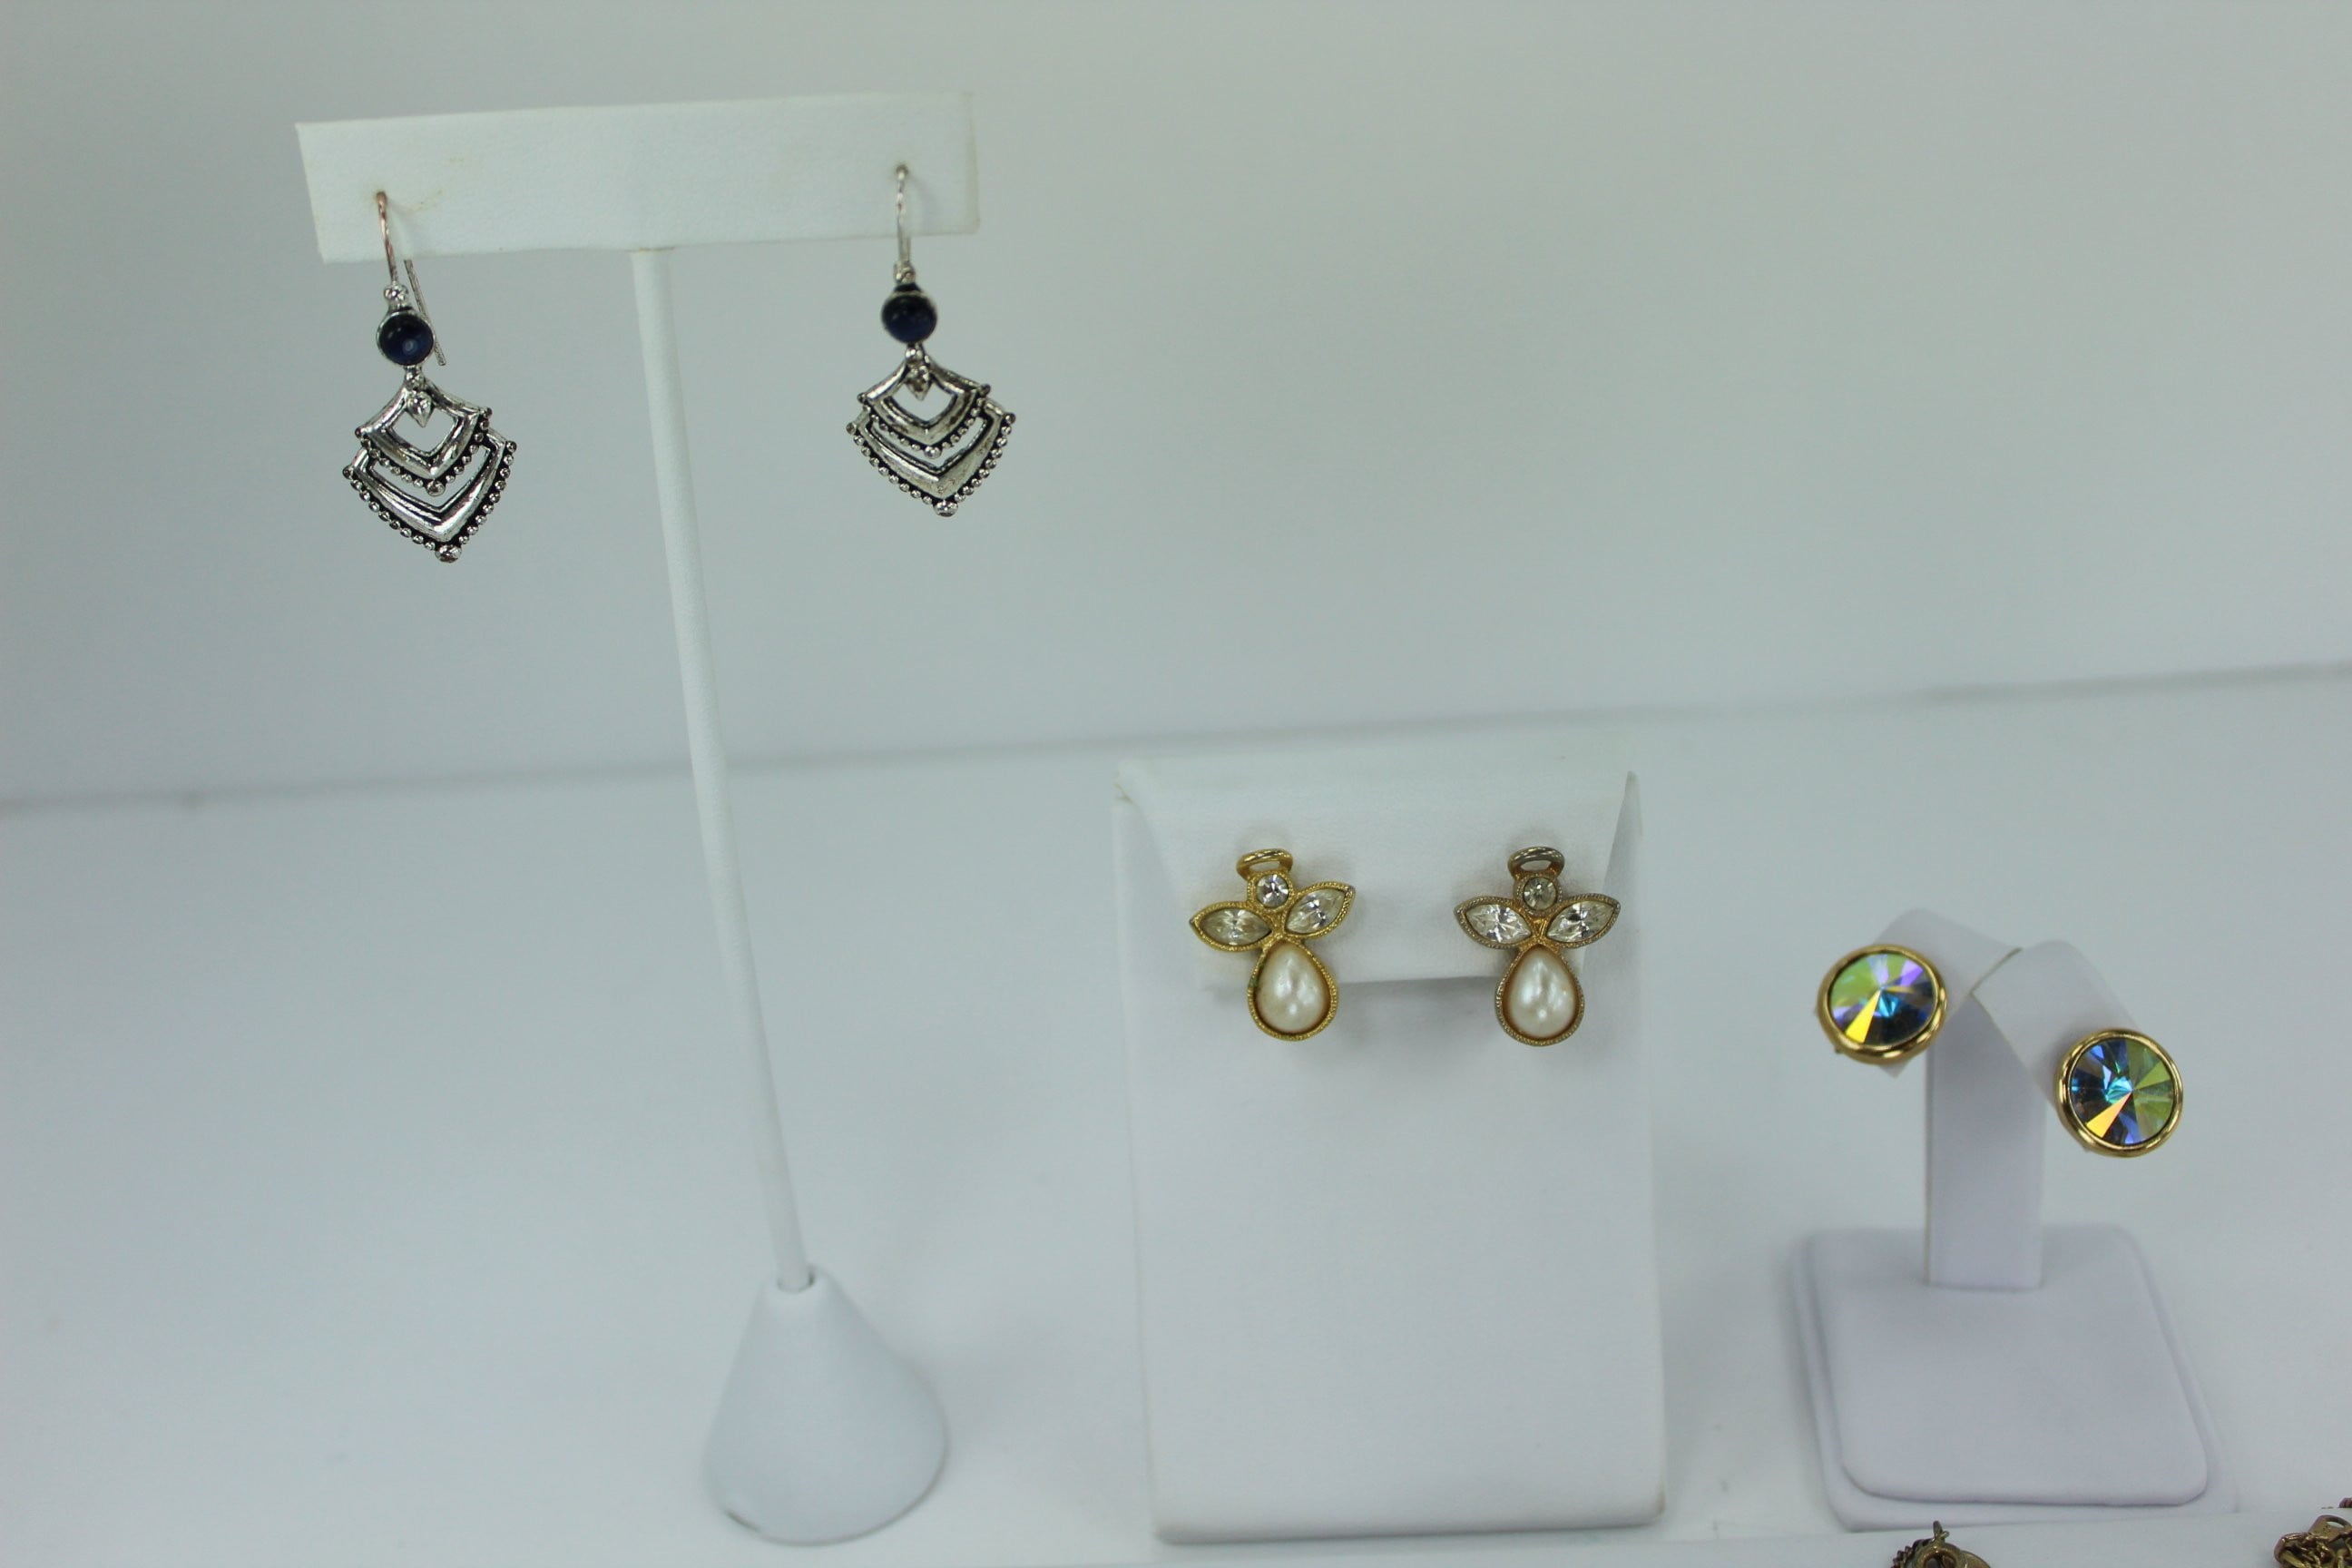 Avon Bracelets/Earrings - jewelry - by owner - sale - craigslist